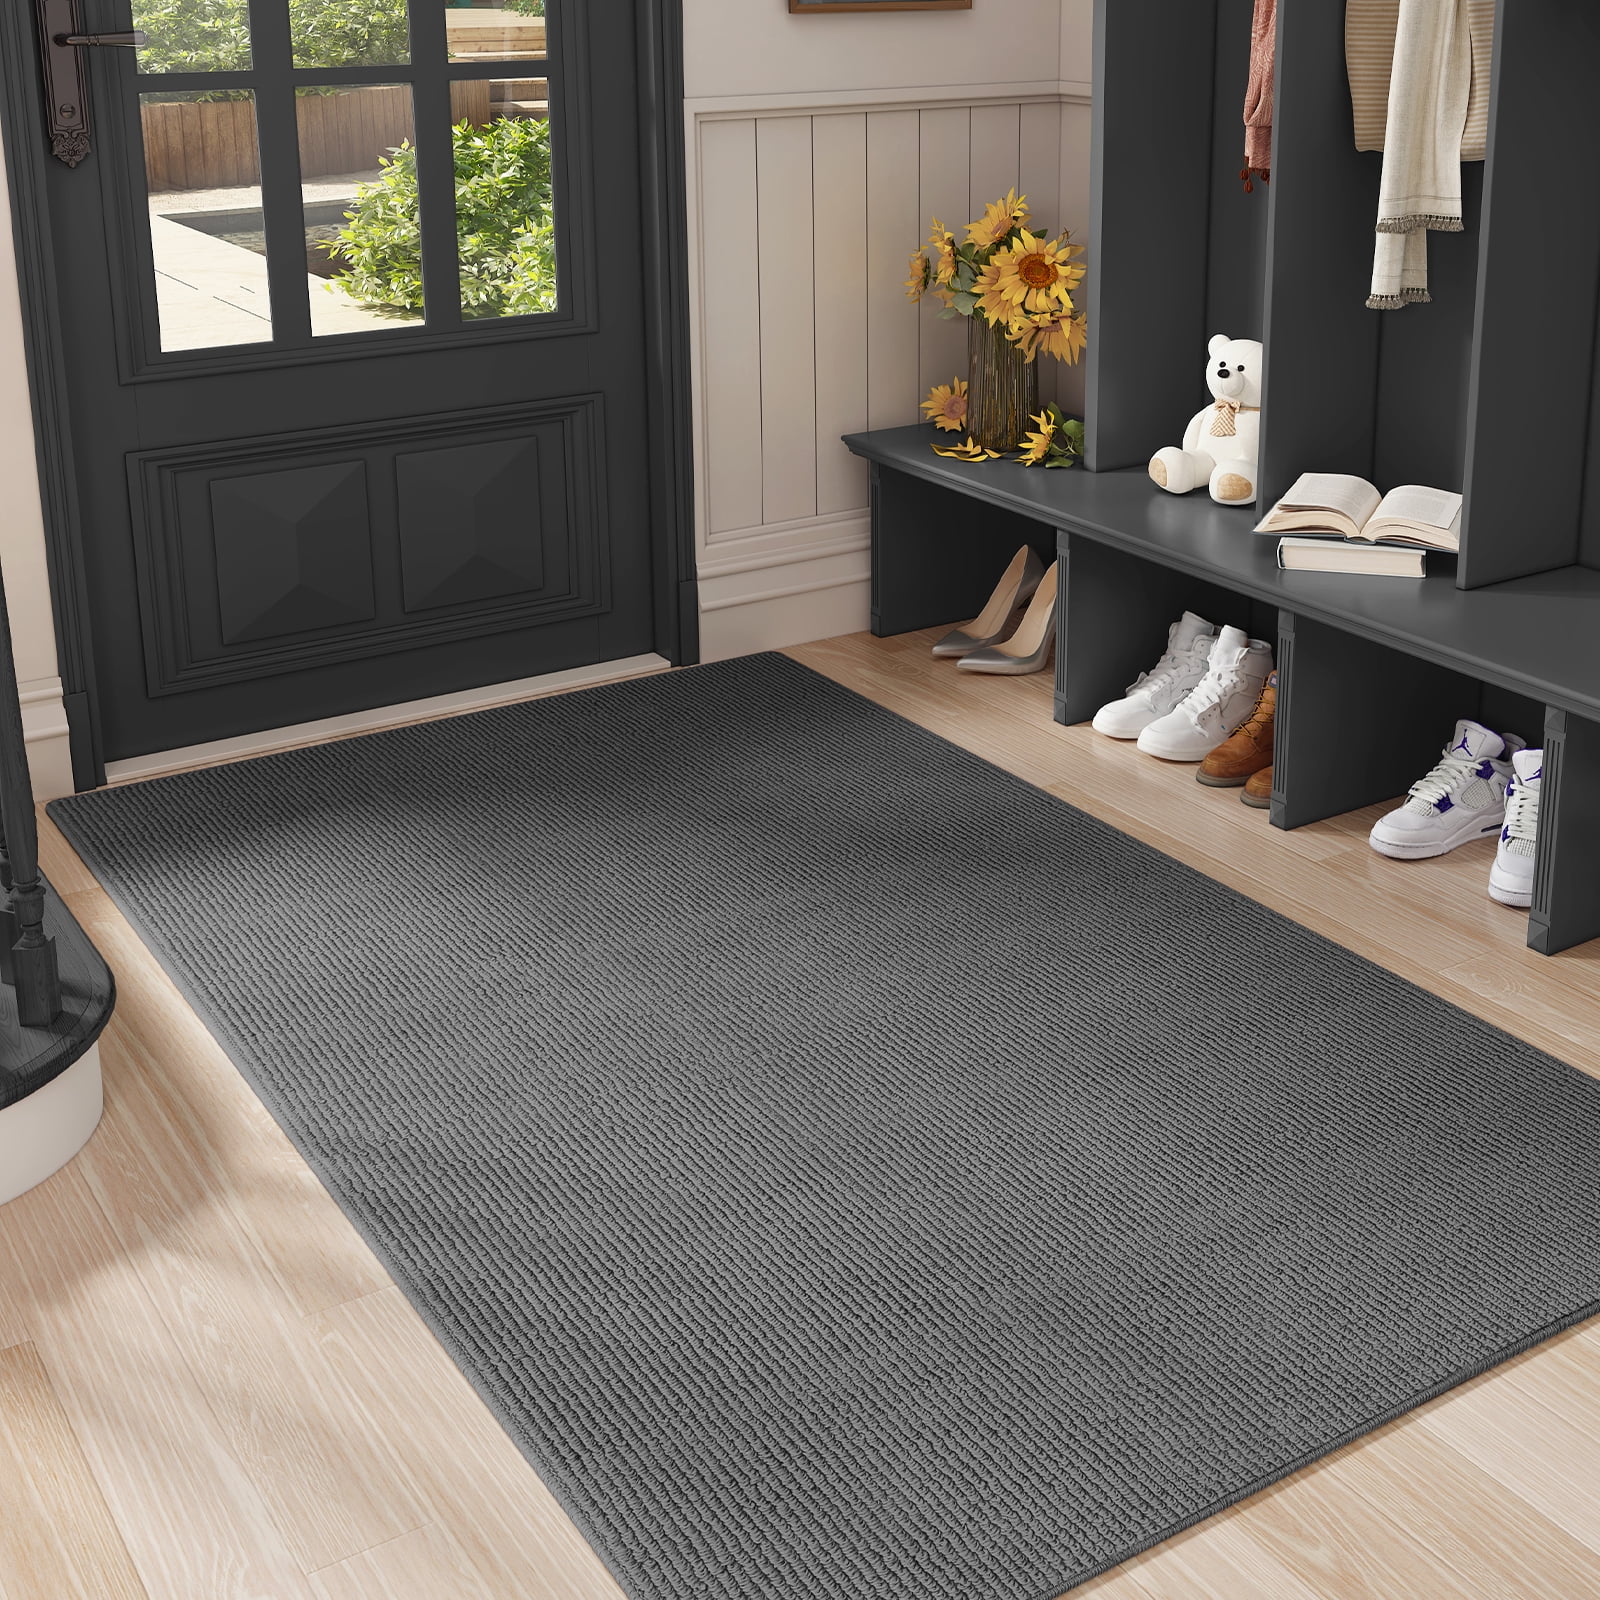 Dean Indoor/Outdoor Carpet Walk-Off Entrance Door Mat/Rug - Black - 6' x 8